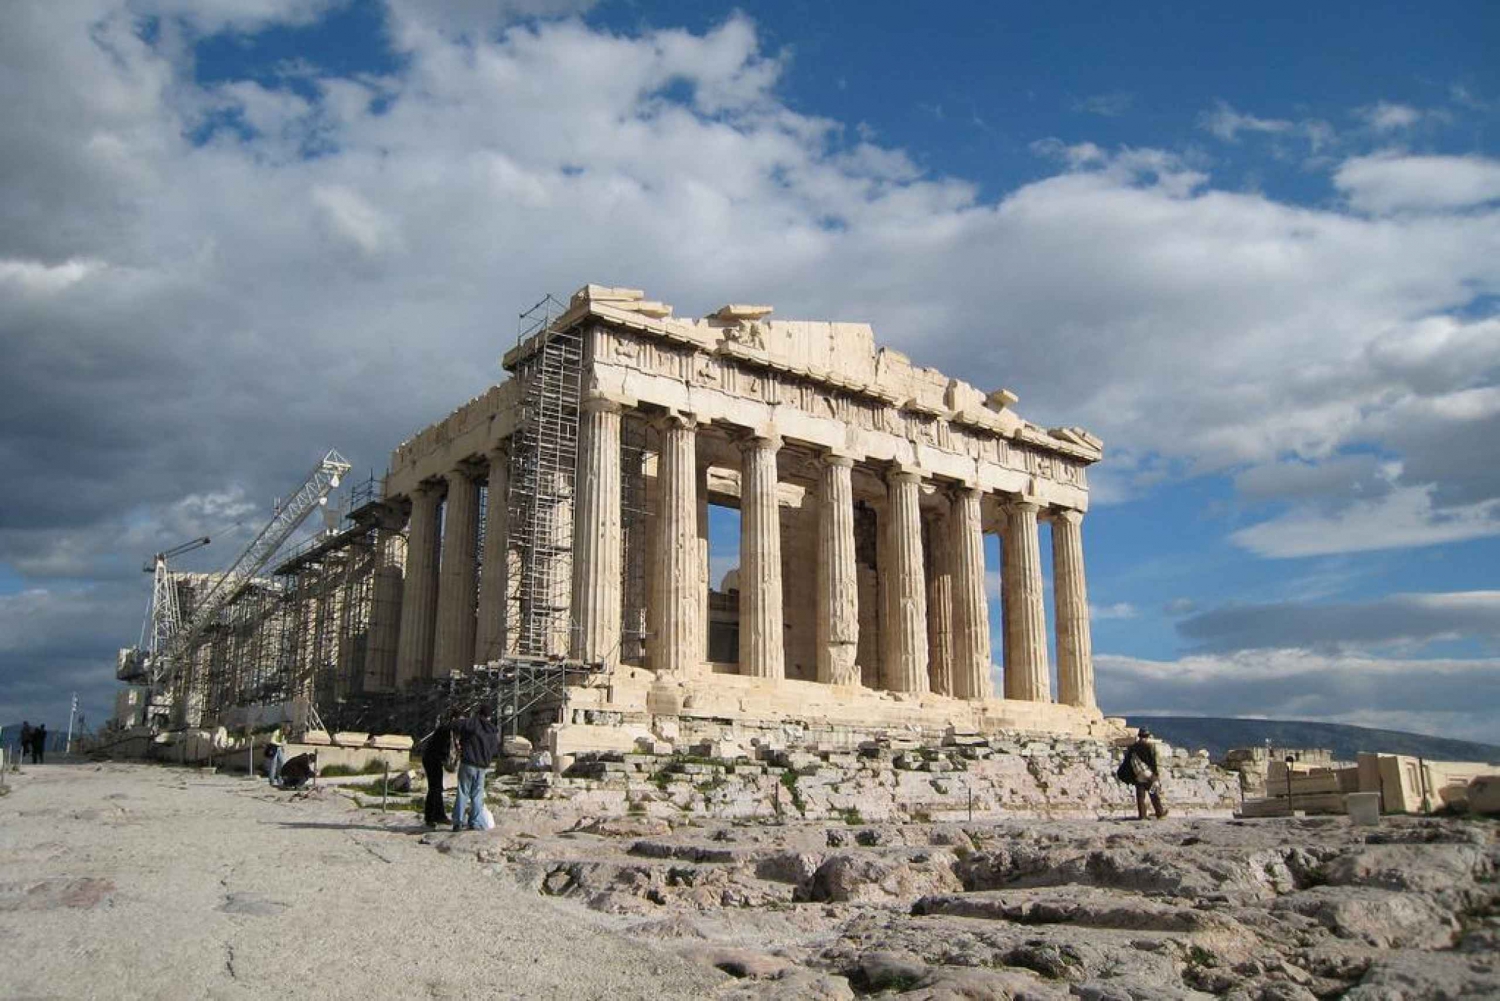 Athènes : visite autonome avec commentaires audio